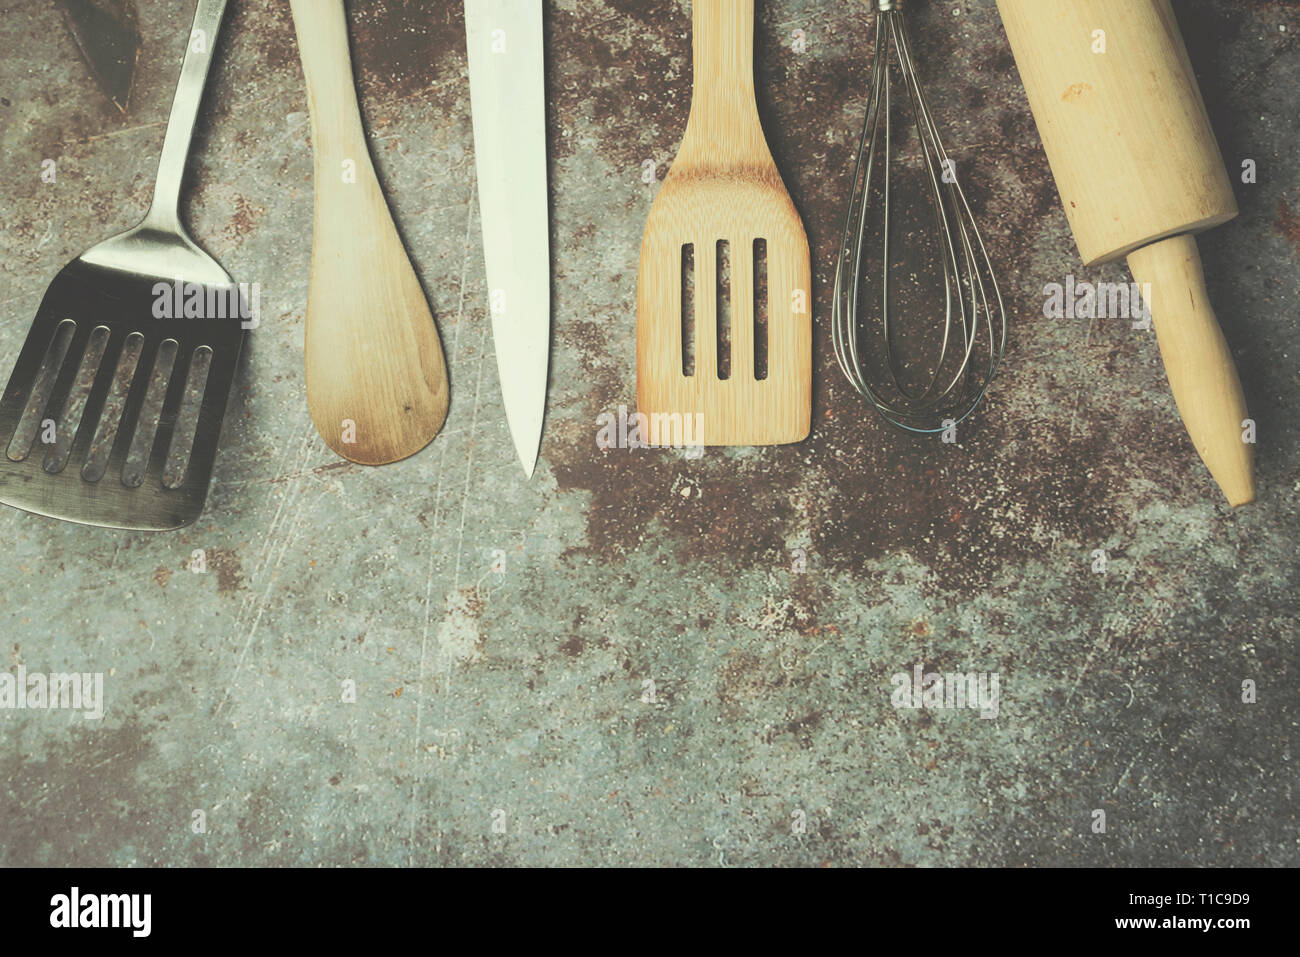 Küchengeräte gegen Grunge Hintergrund Stockfoto